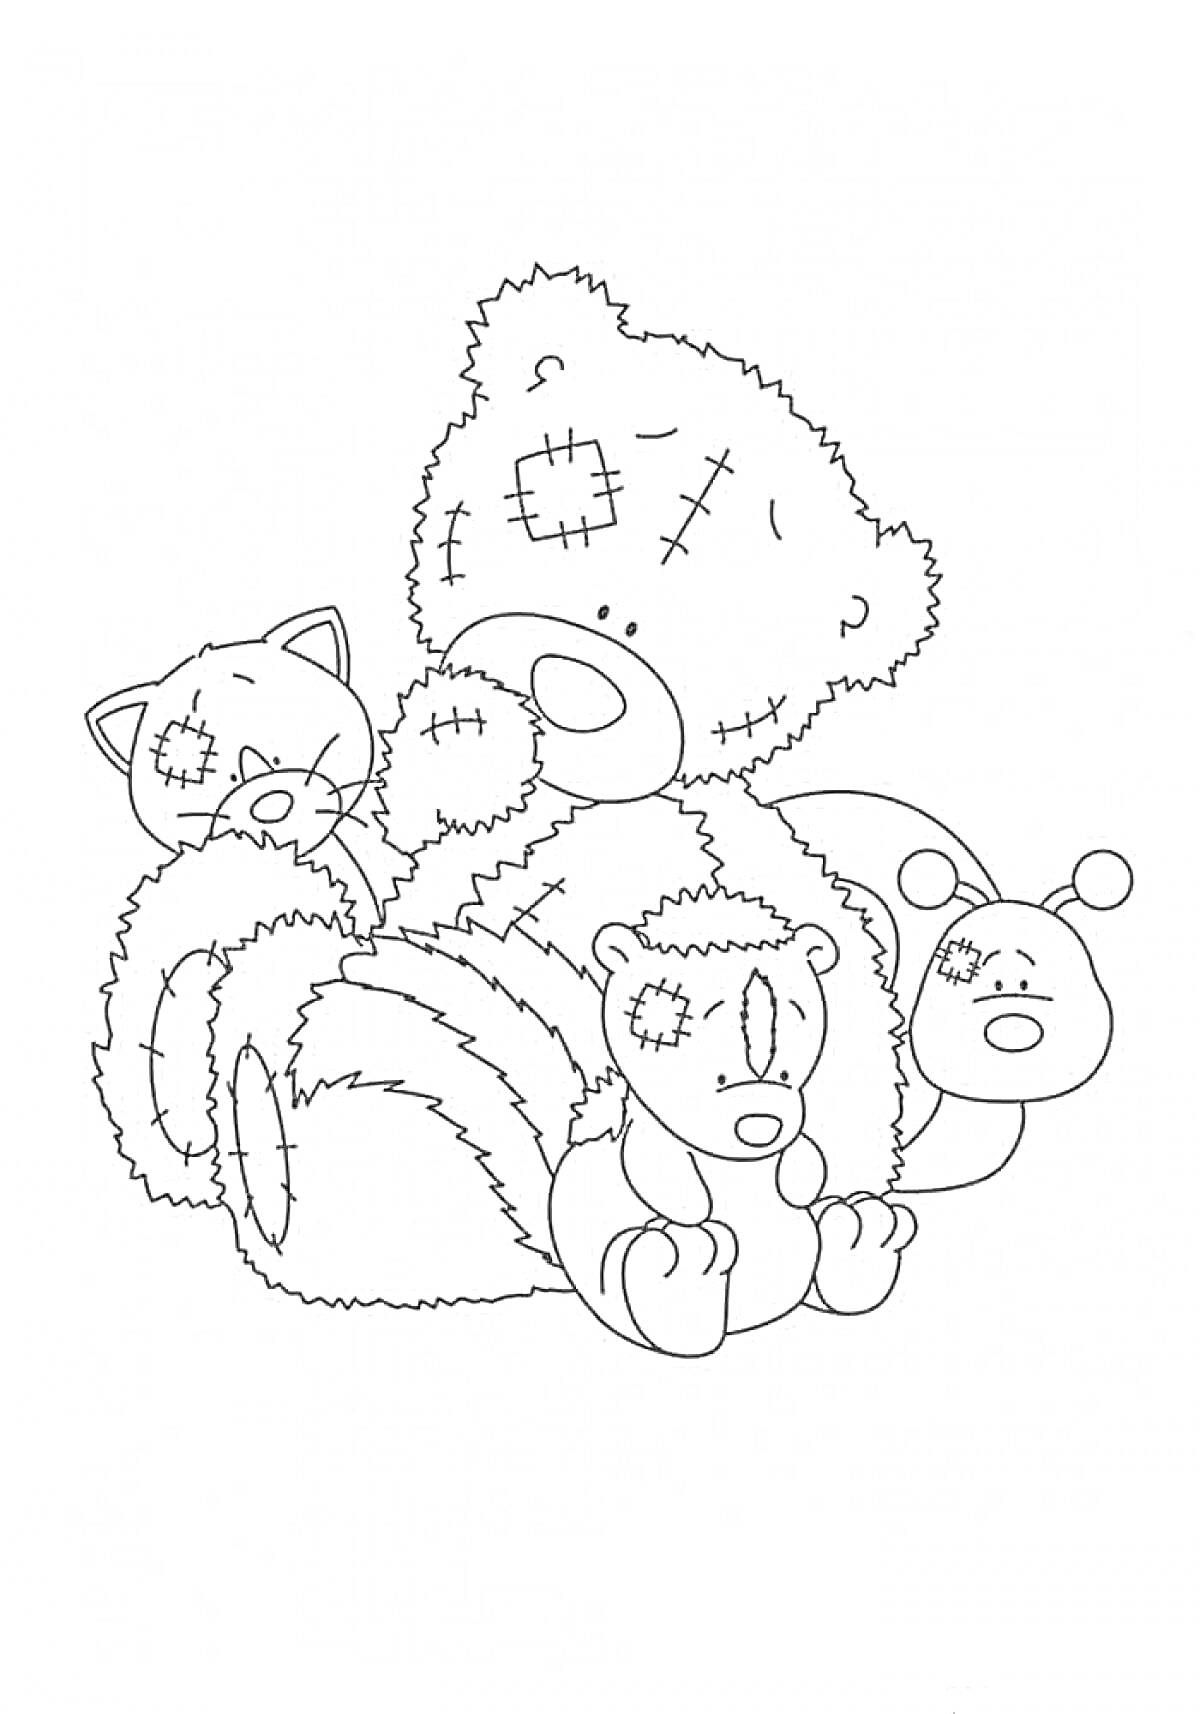 Мишка Тедди с двумя маленькими медвежатами, кошкой и насекомым